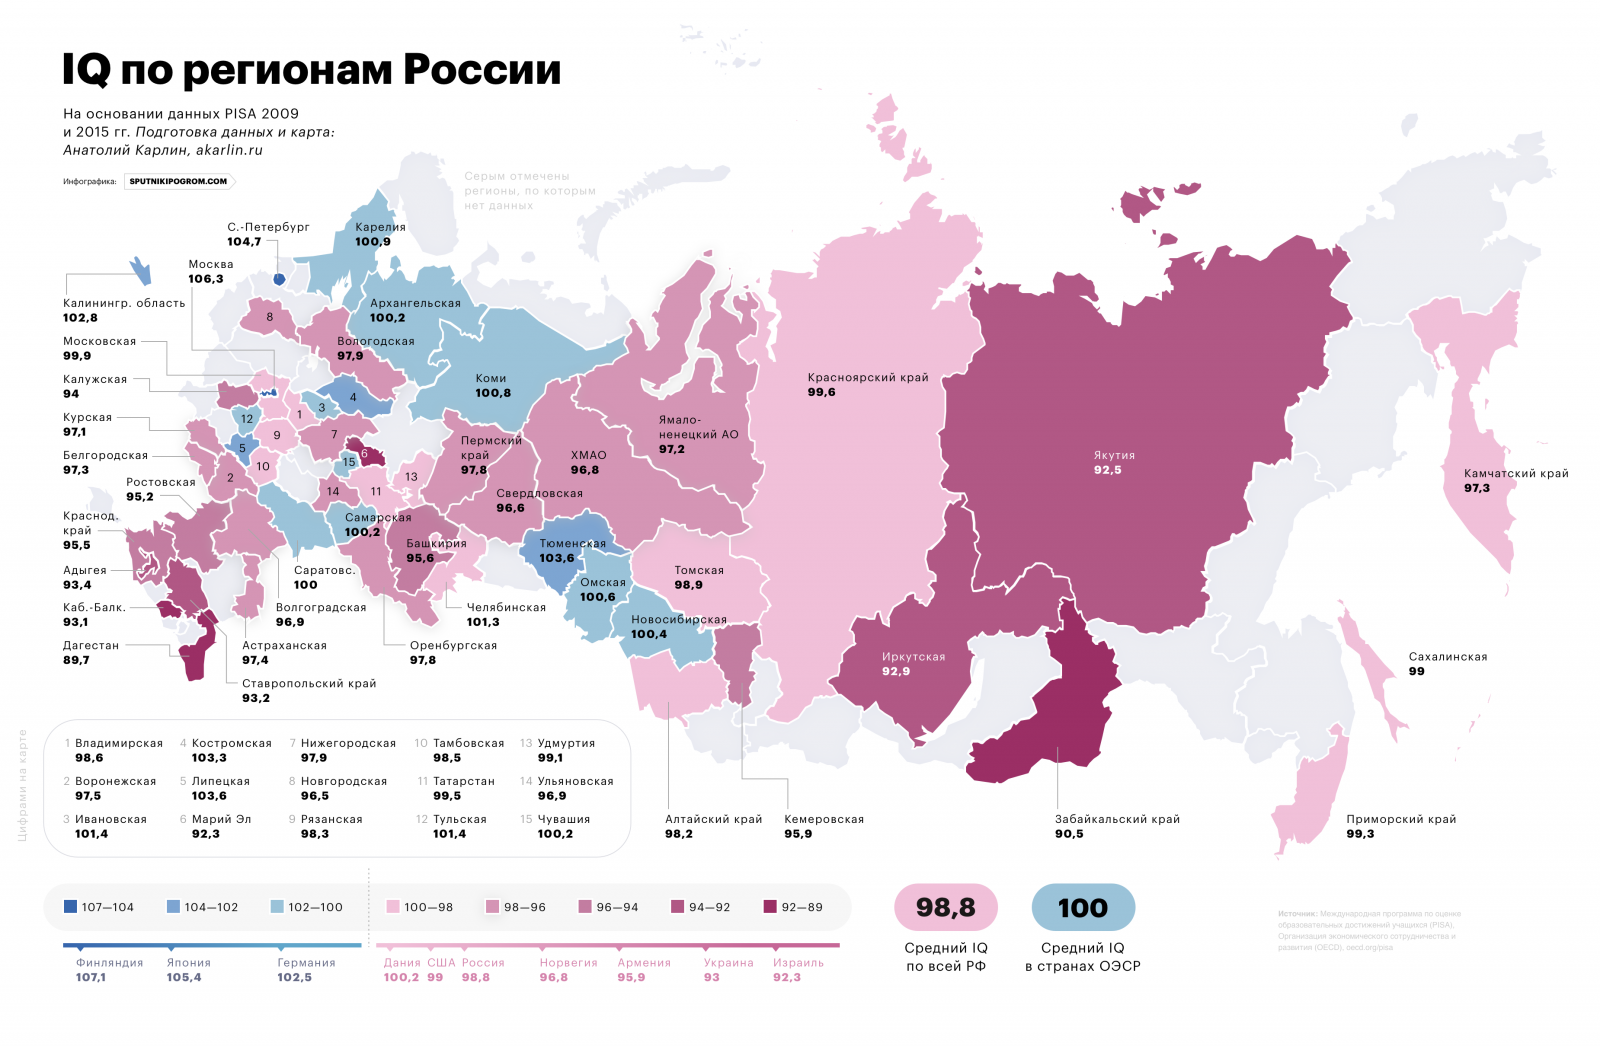 Карта средних IQ в регионах России